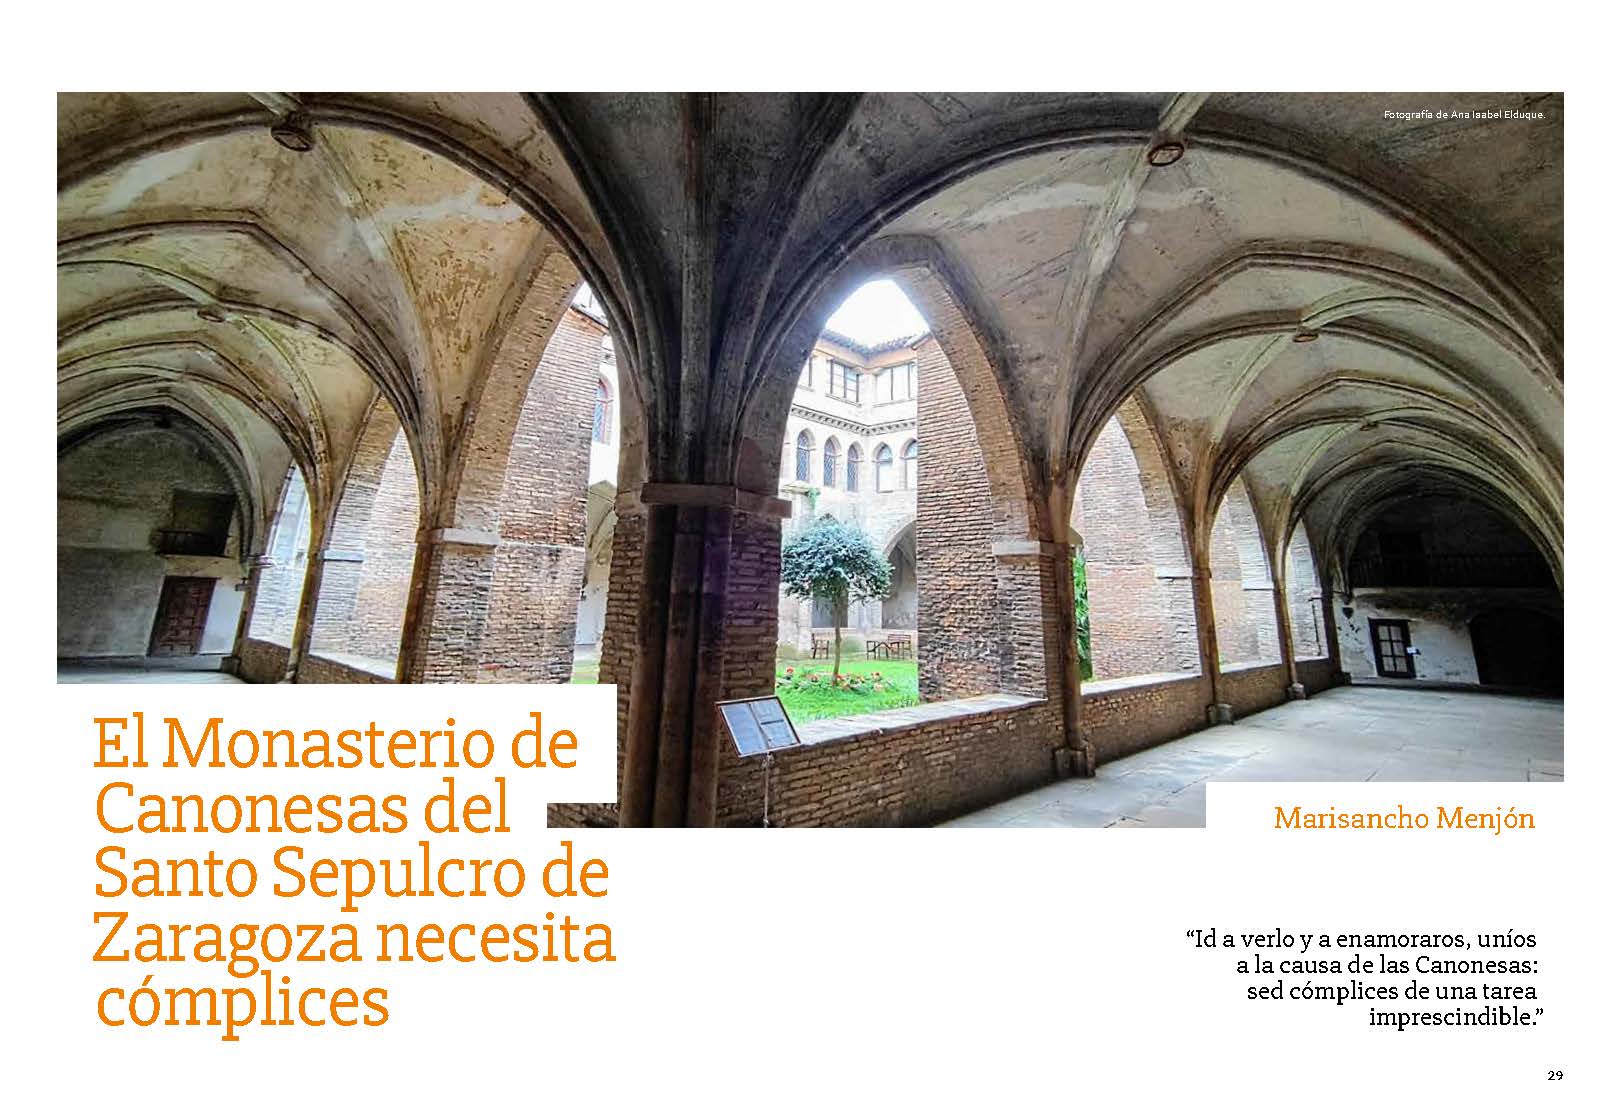 El Monasterio de las Canonesas del Santo Sepulcro de Zaragoza necesita cómplices